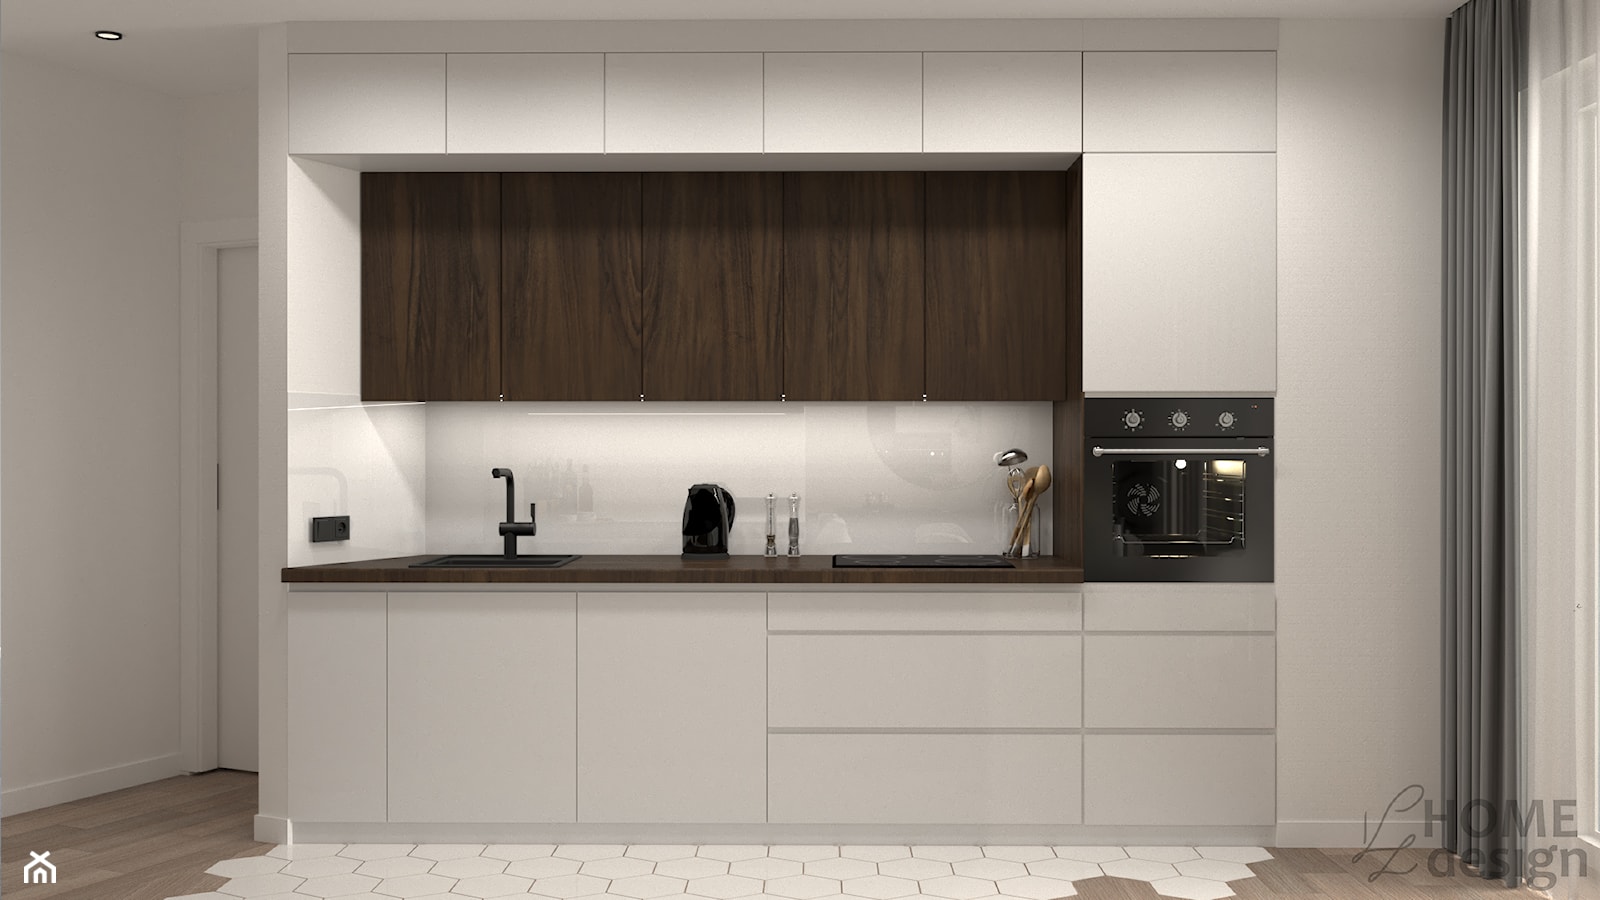 Mieszkanie łączone w jedno - kuchnia - zdjęcie od KZ Home Design - Homebook